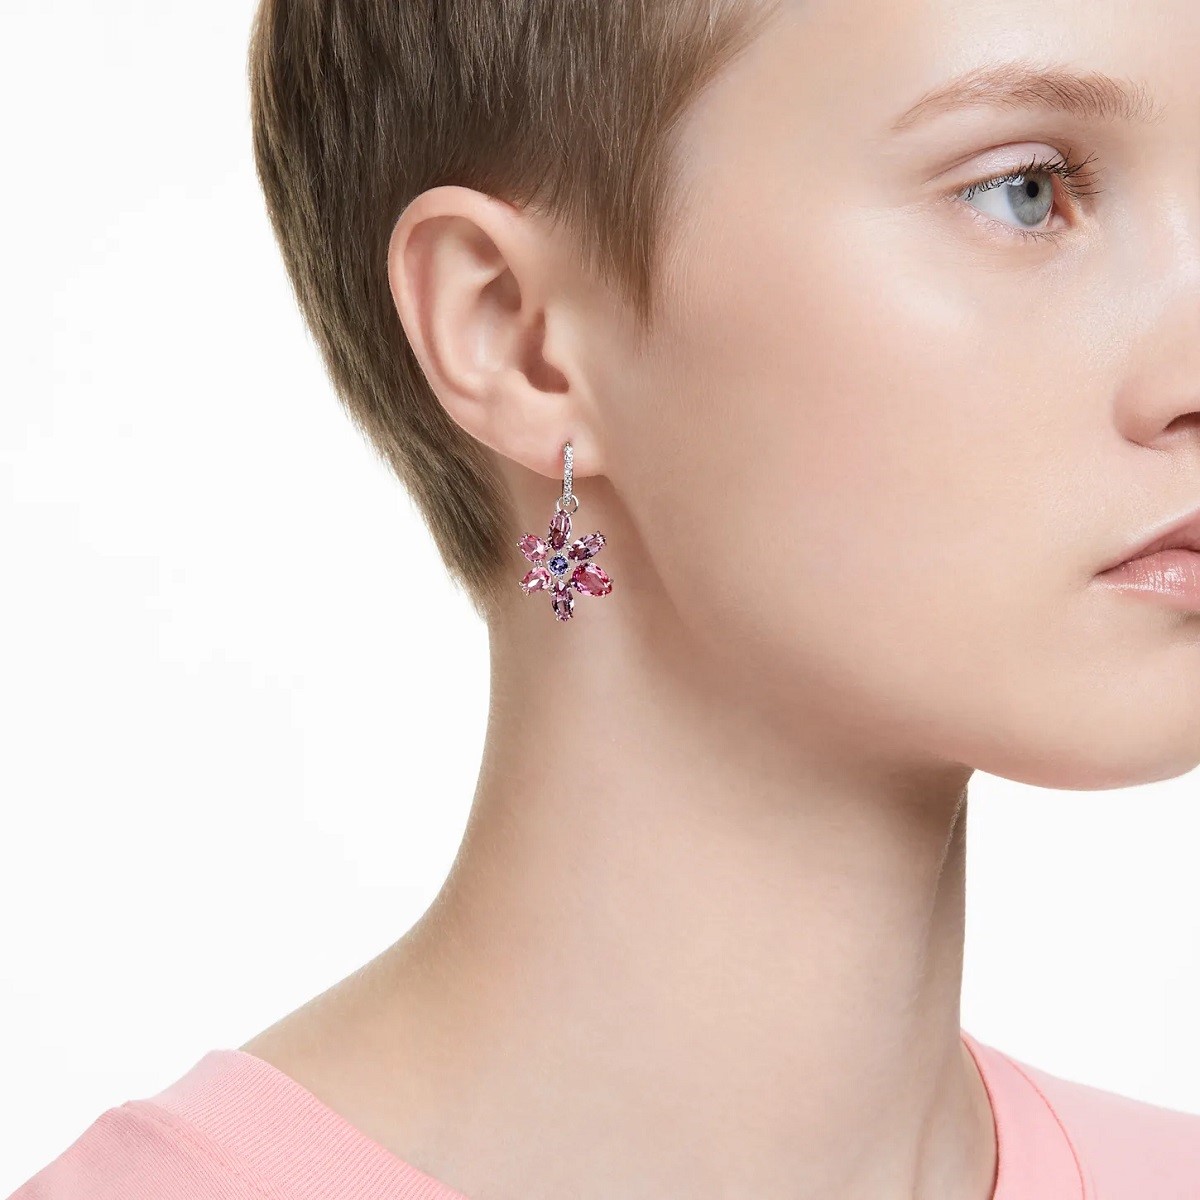 Swarovski Gema Flower Drop Earrings - Pink with Rhodium Plating 5658397